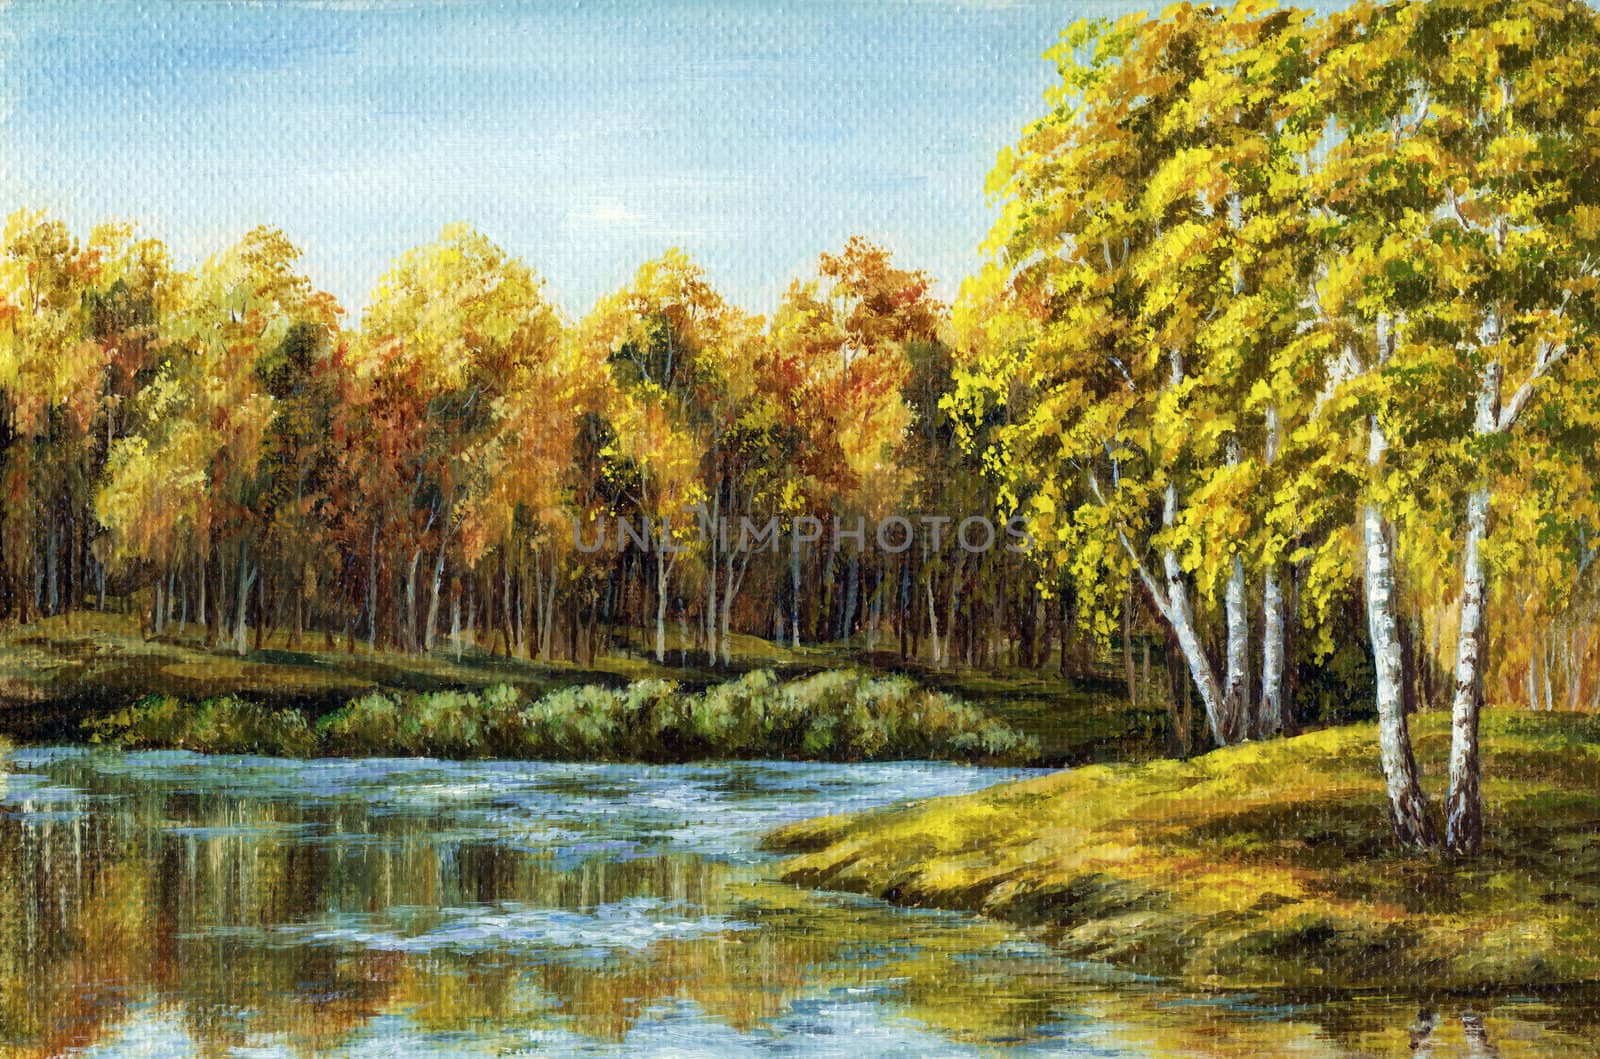 Landscape, picture oil paints on a canvas: autumn lake